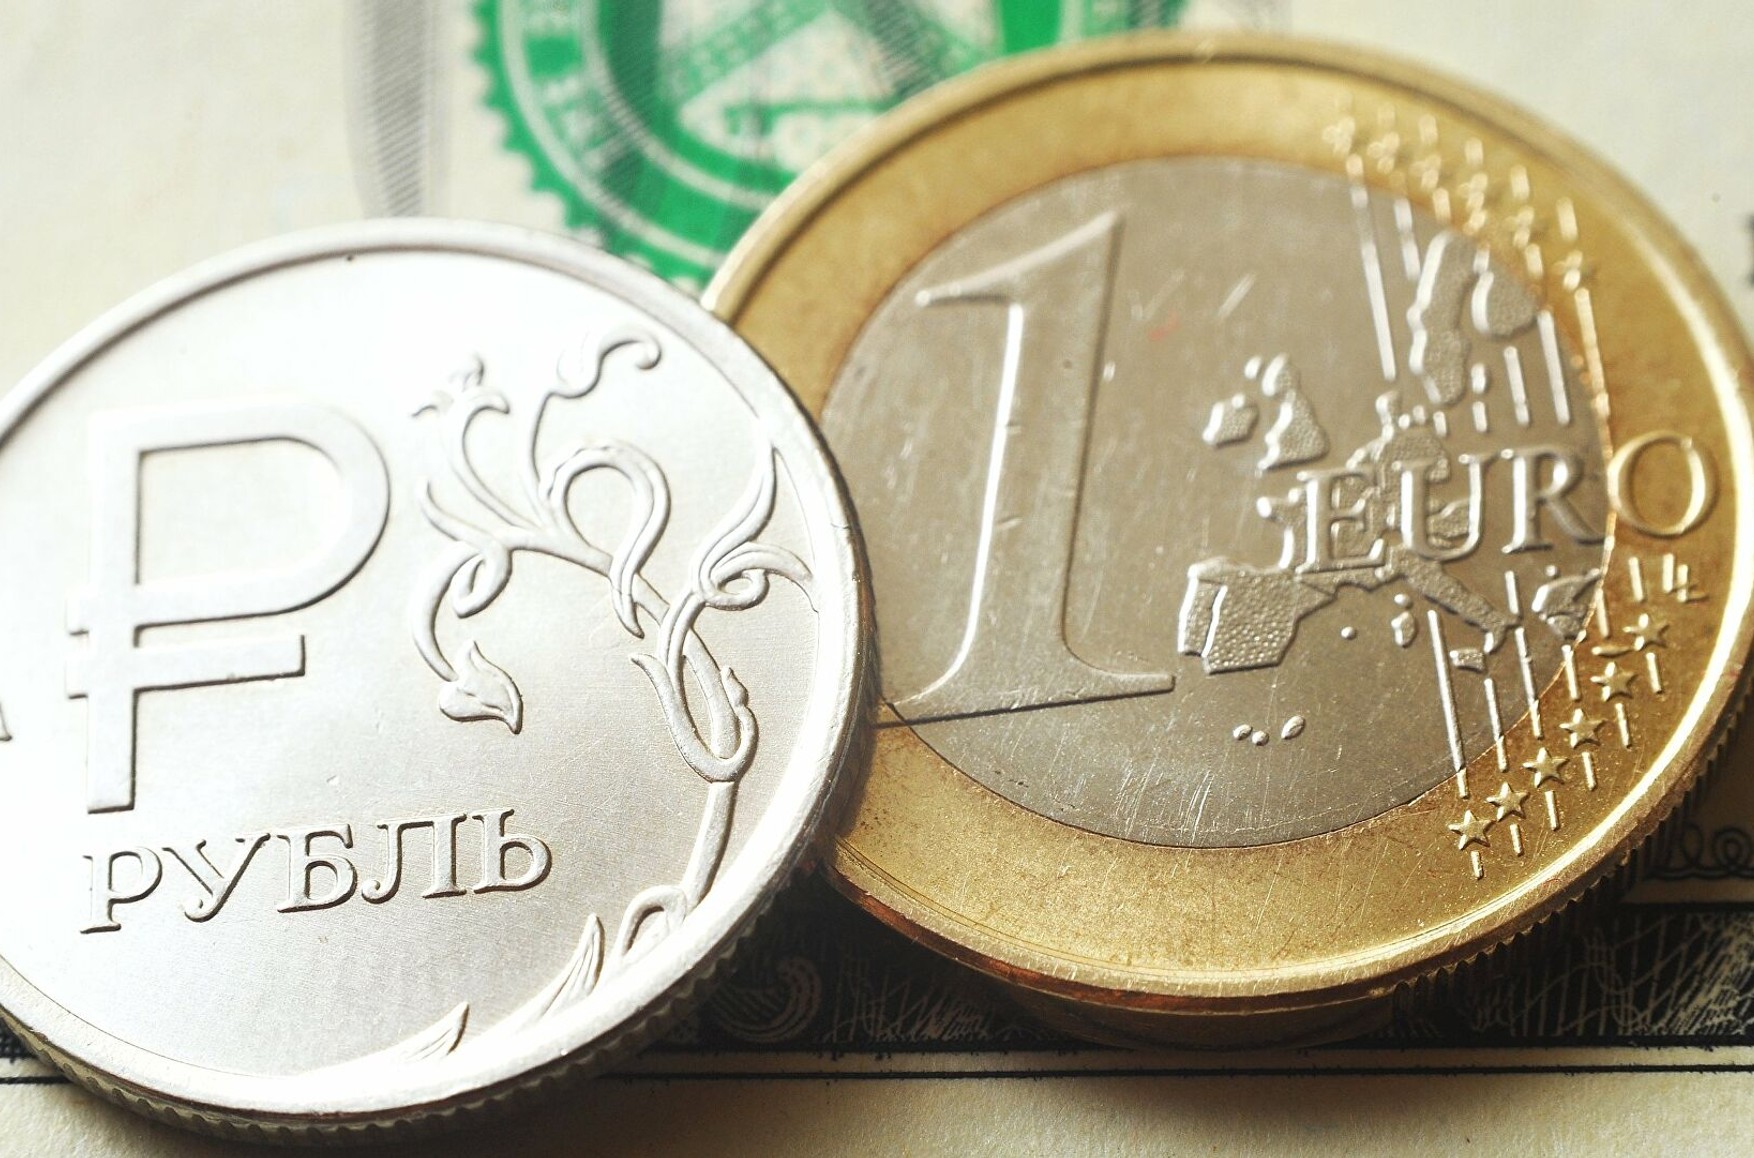 Курс євро перевищив 93 рубля, оновивши максимум з грудня 2014 року